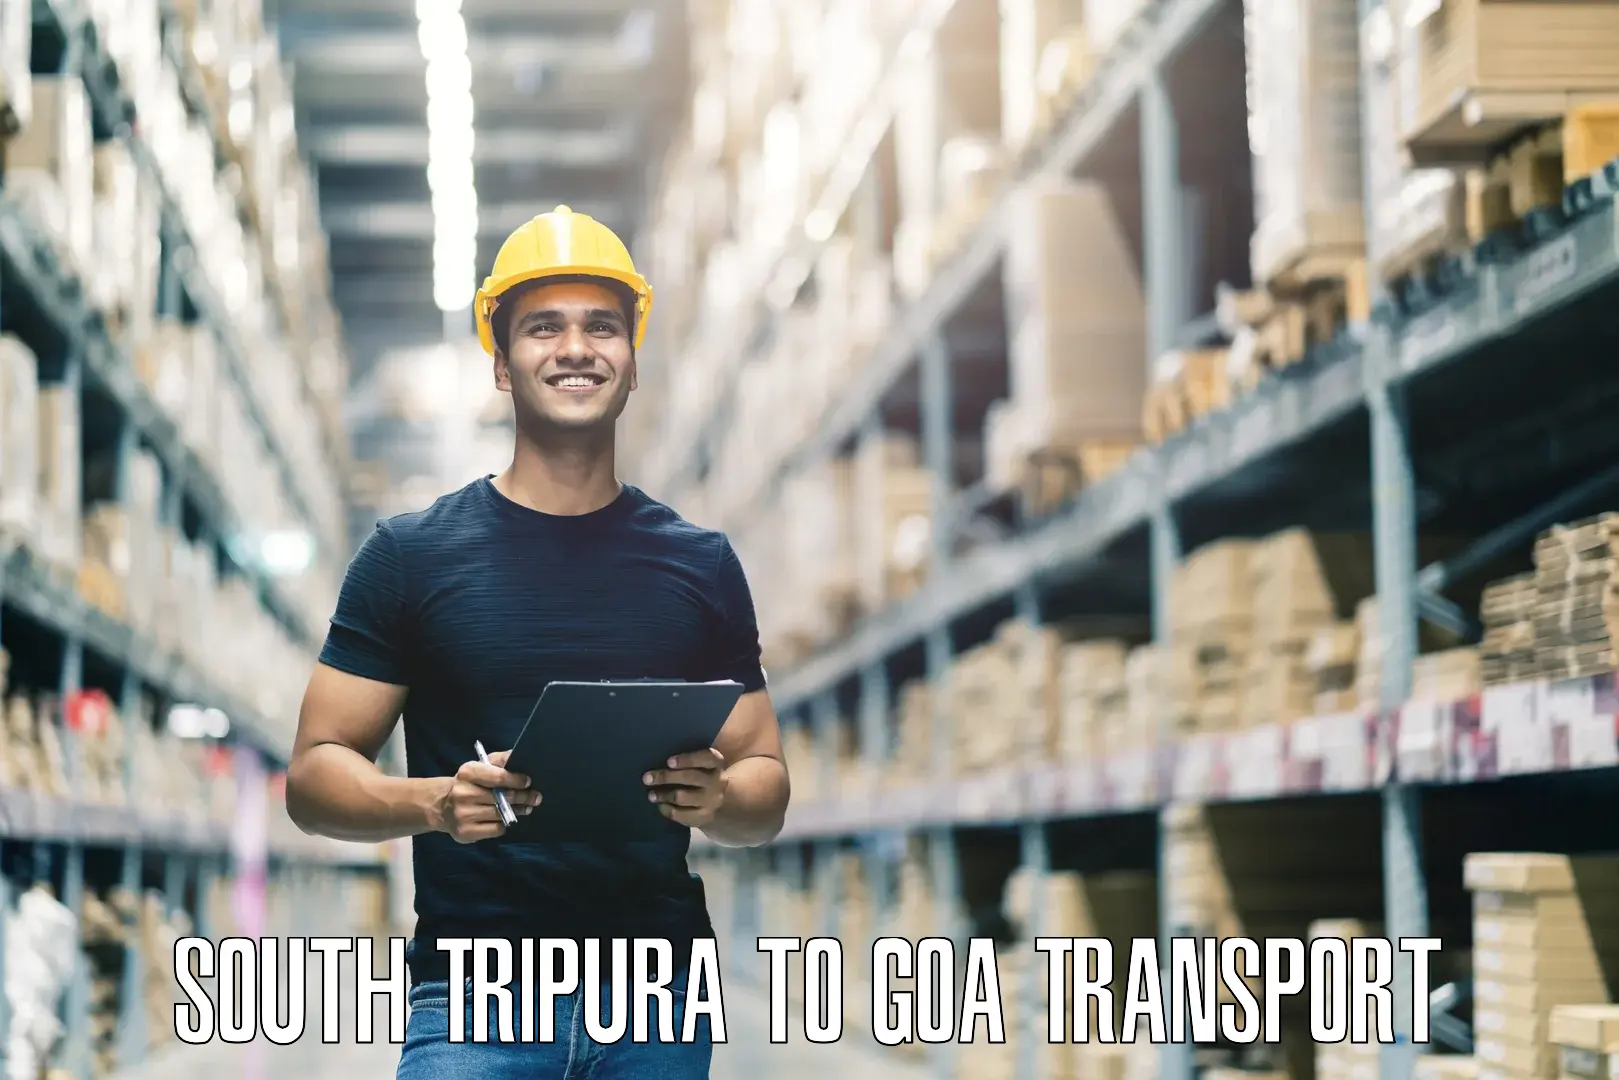 Cargo transport services South Tripura to South Goa